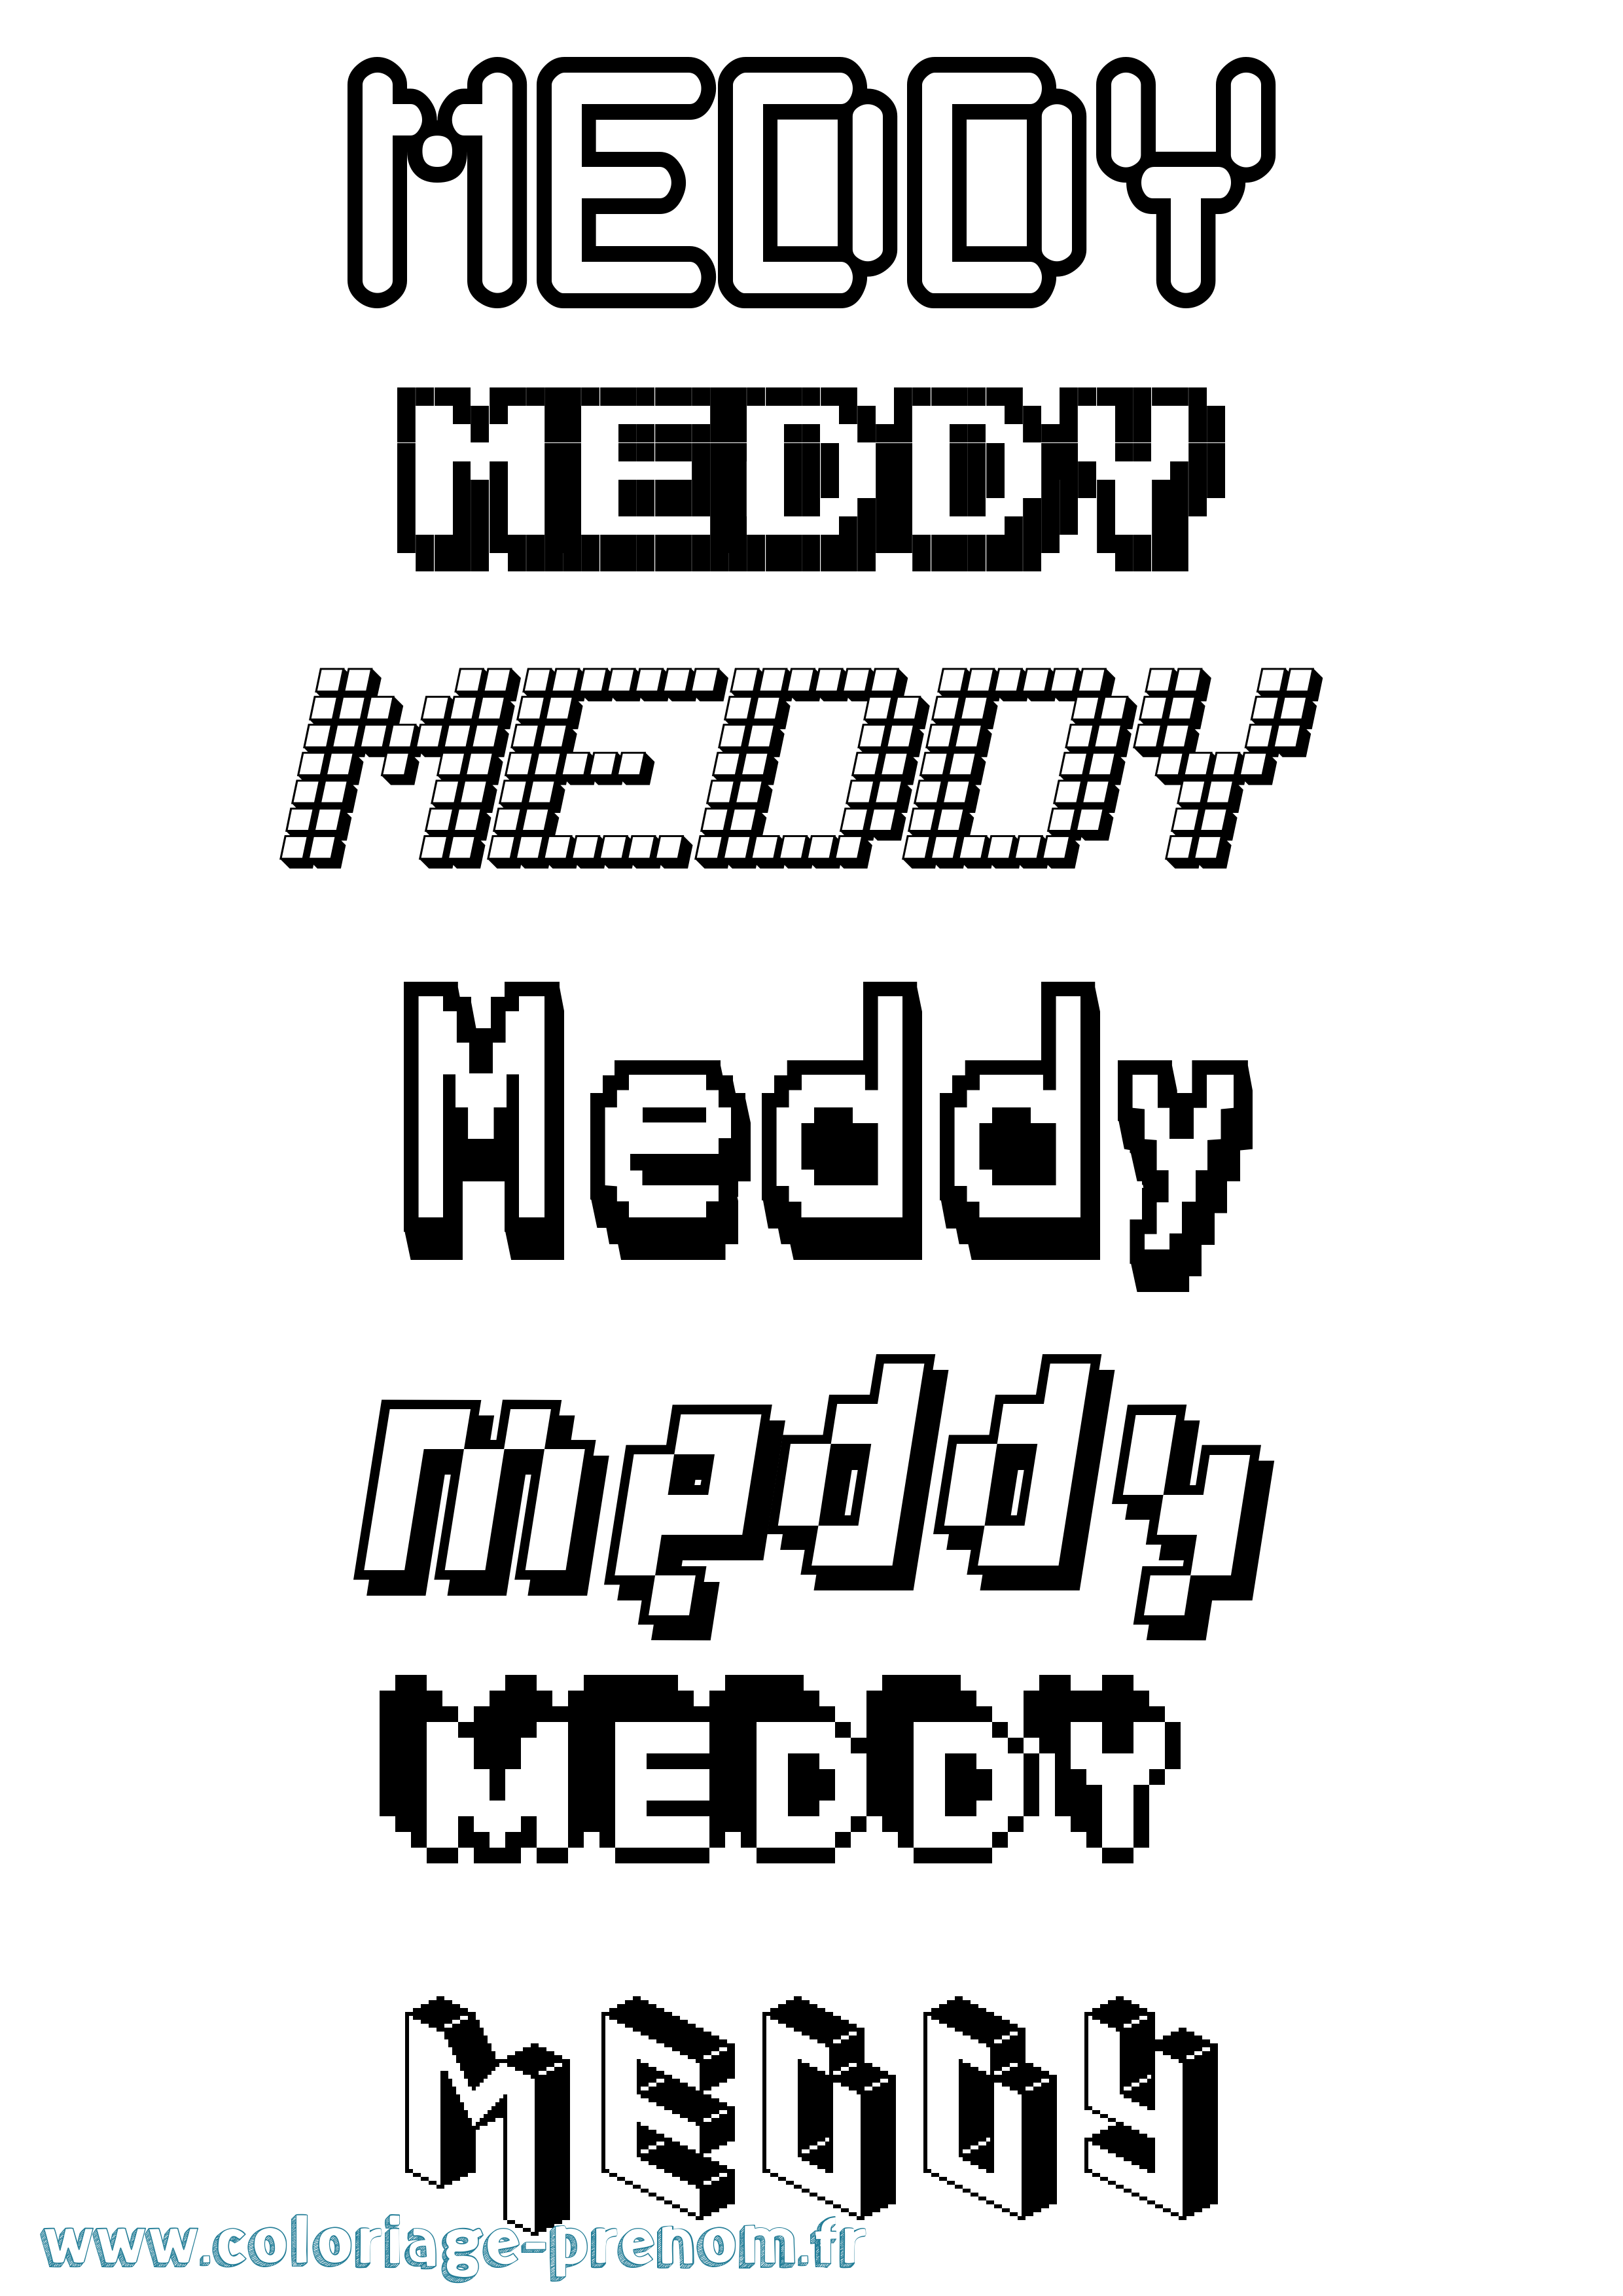 Coloriage prénom Meddy Pixel